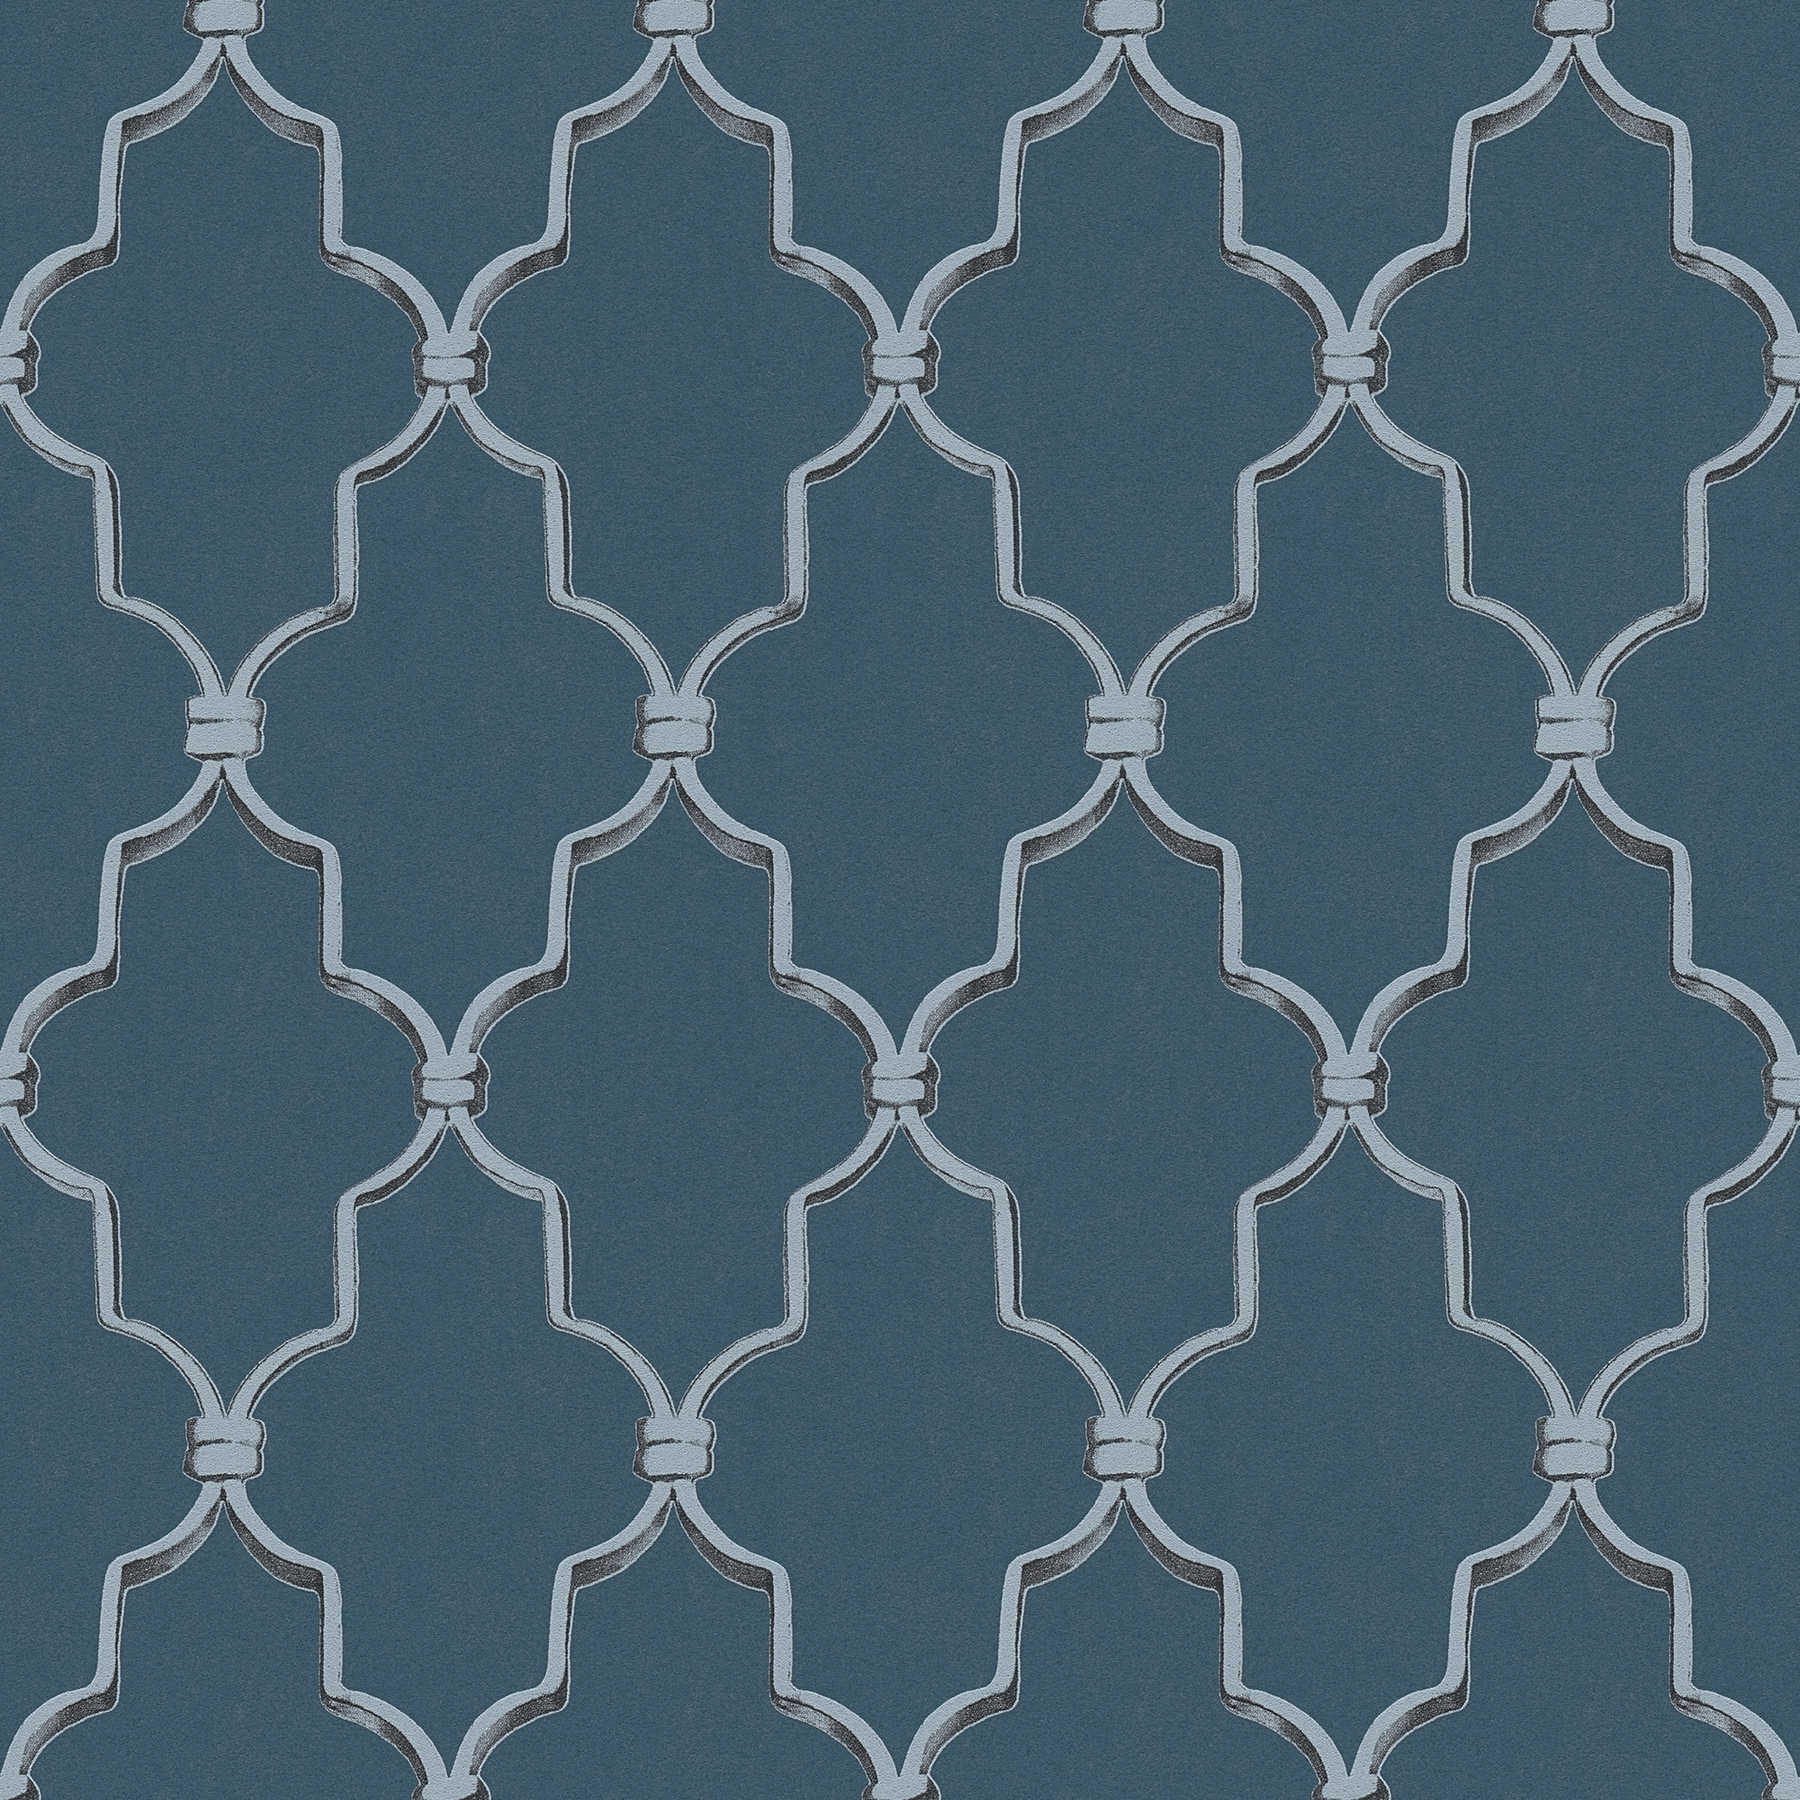 Art Deco behang 3D patroon & metallic effect - blauw, grijs
